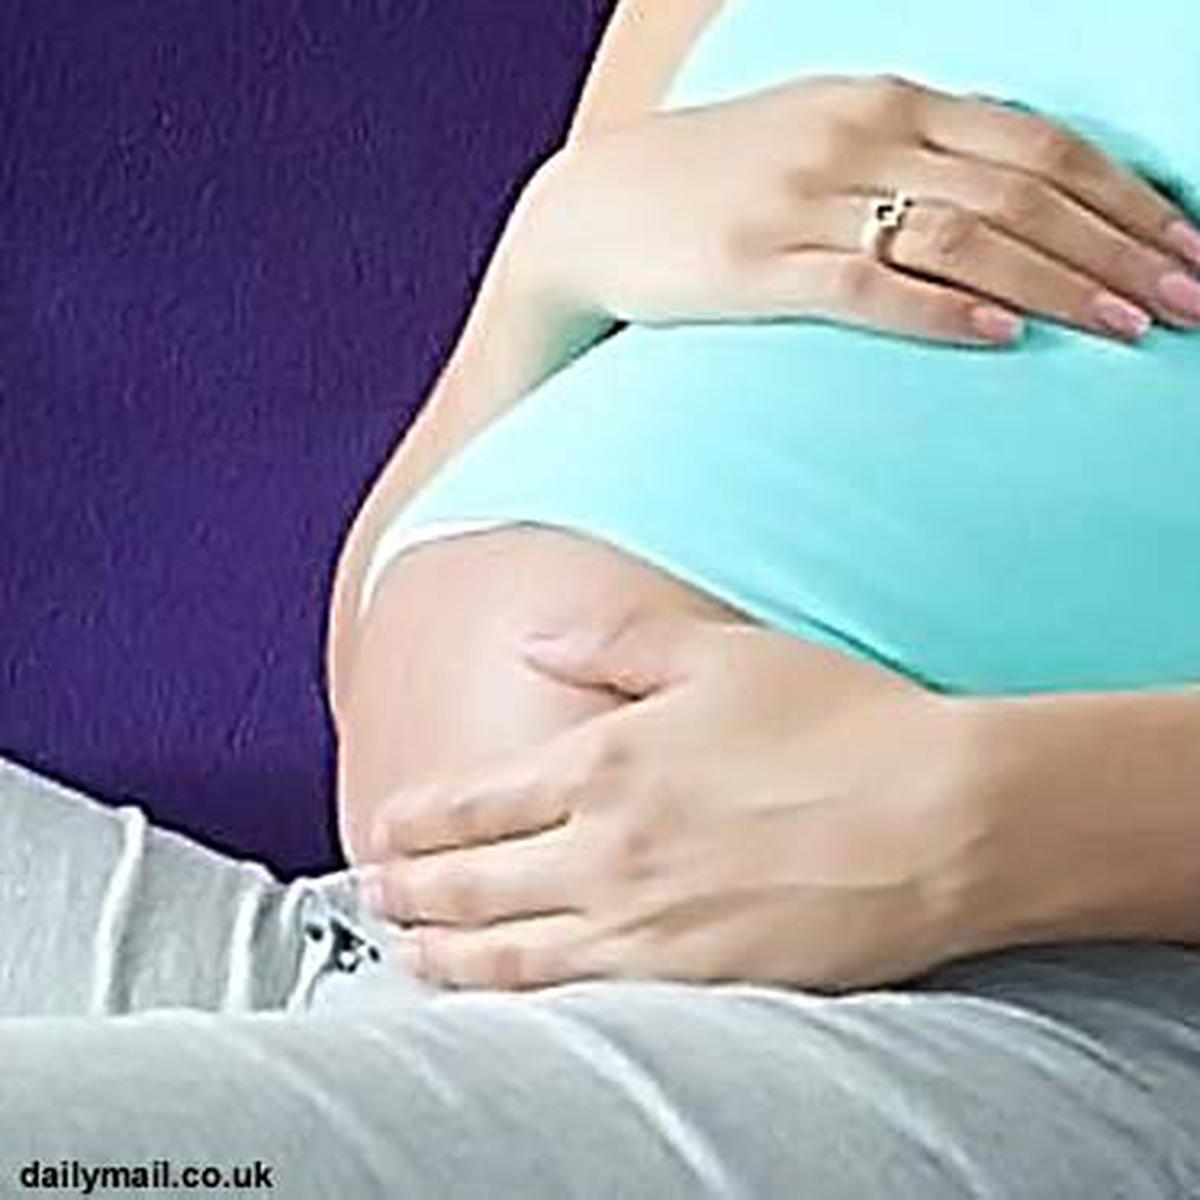 Di hamil bawah 6 perut bagian janin bulan bergerak trasa kedutan